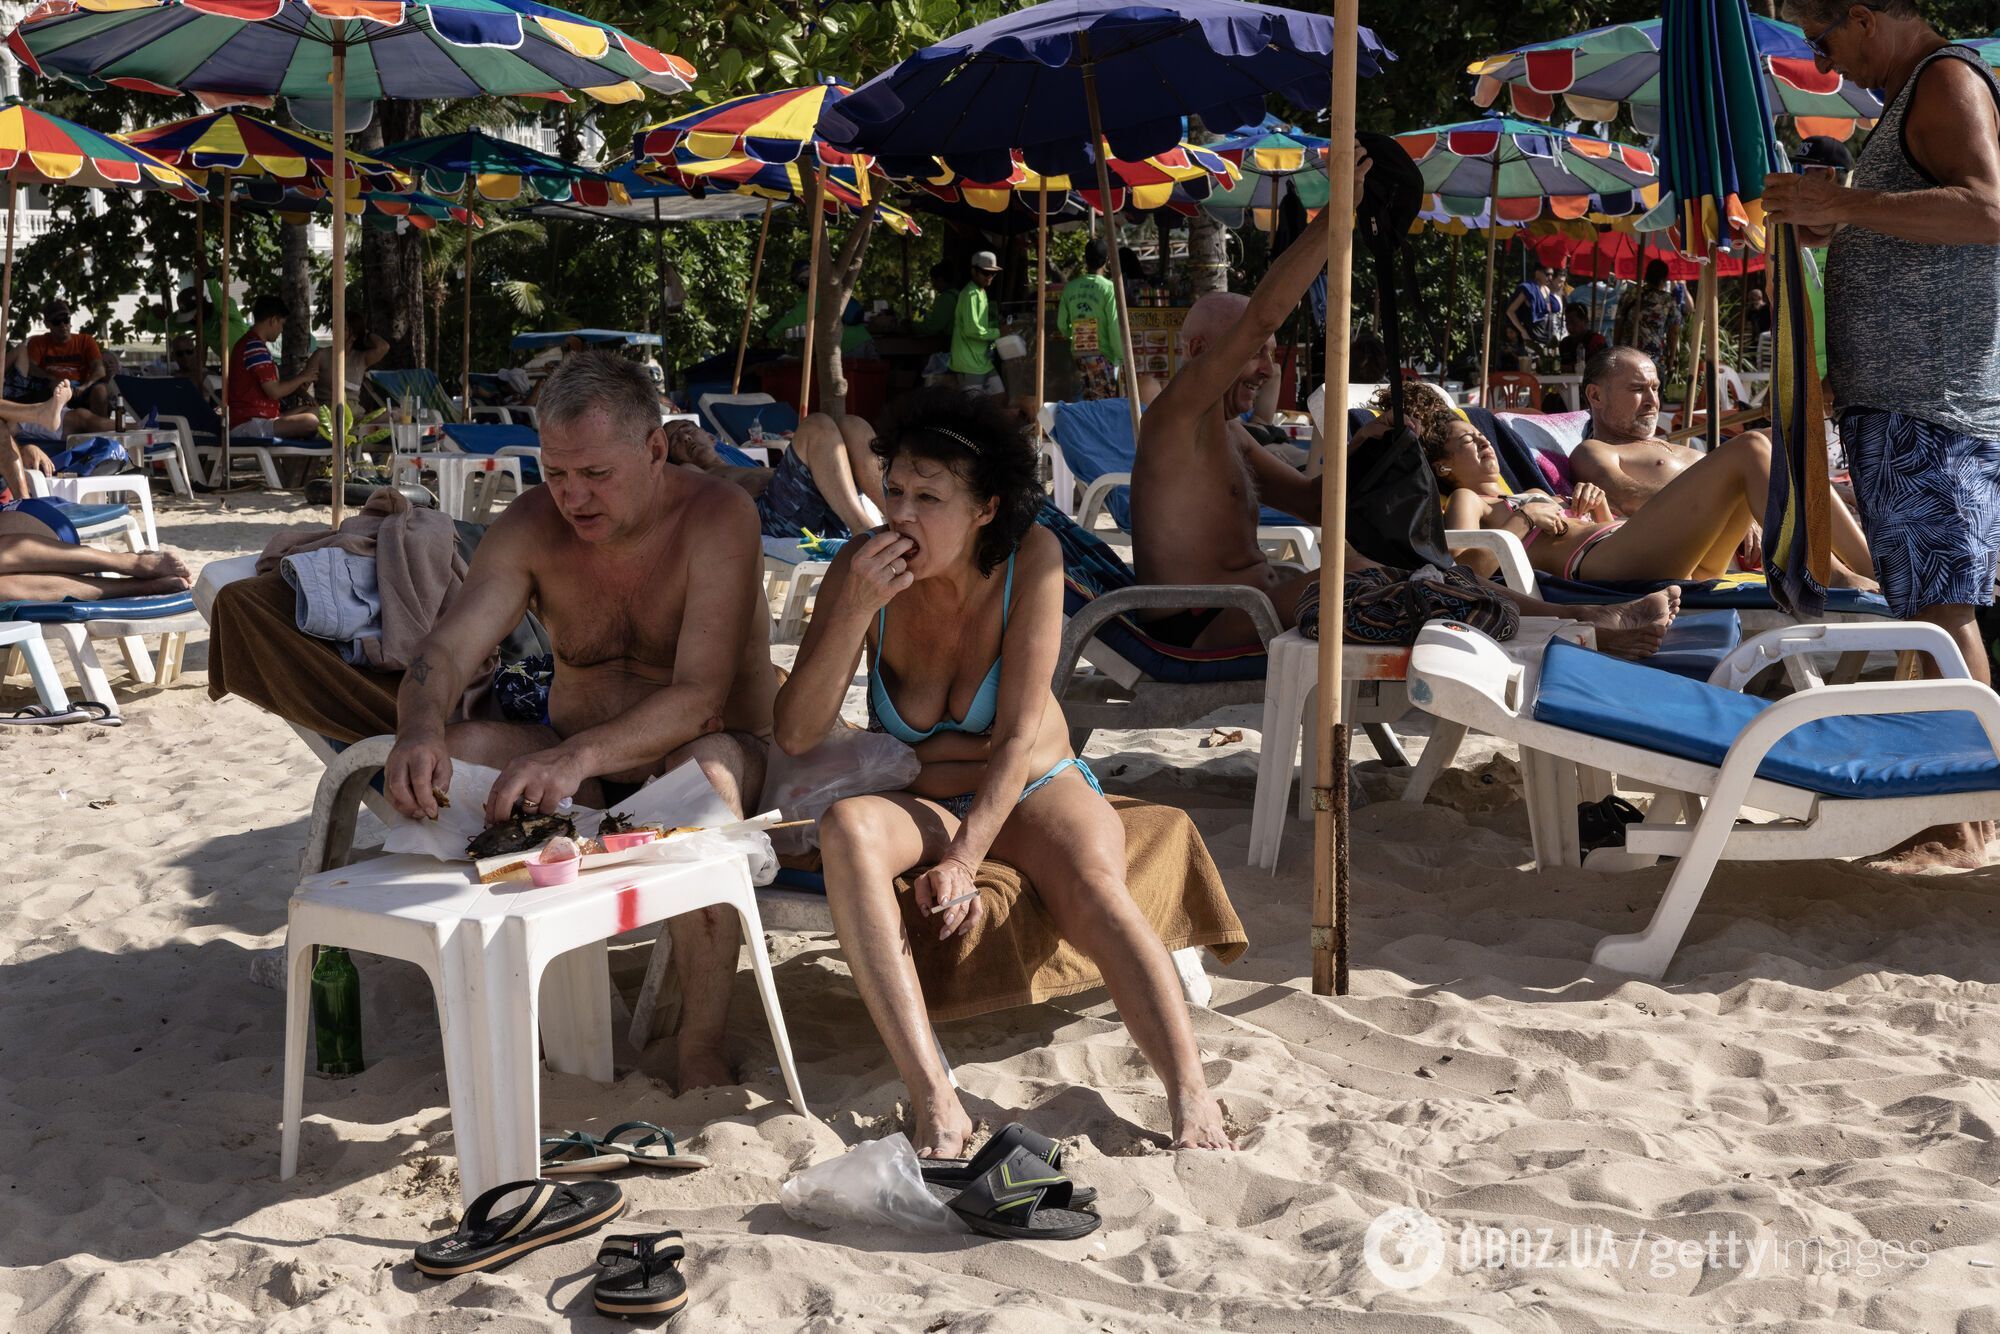 Російські туристи влаштували "ніч жахів" на популярному курорті Таїланду: нападали, виганяли, відмовлялися платити